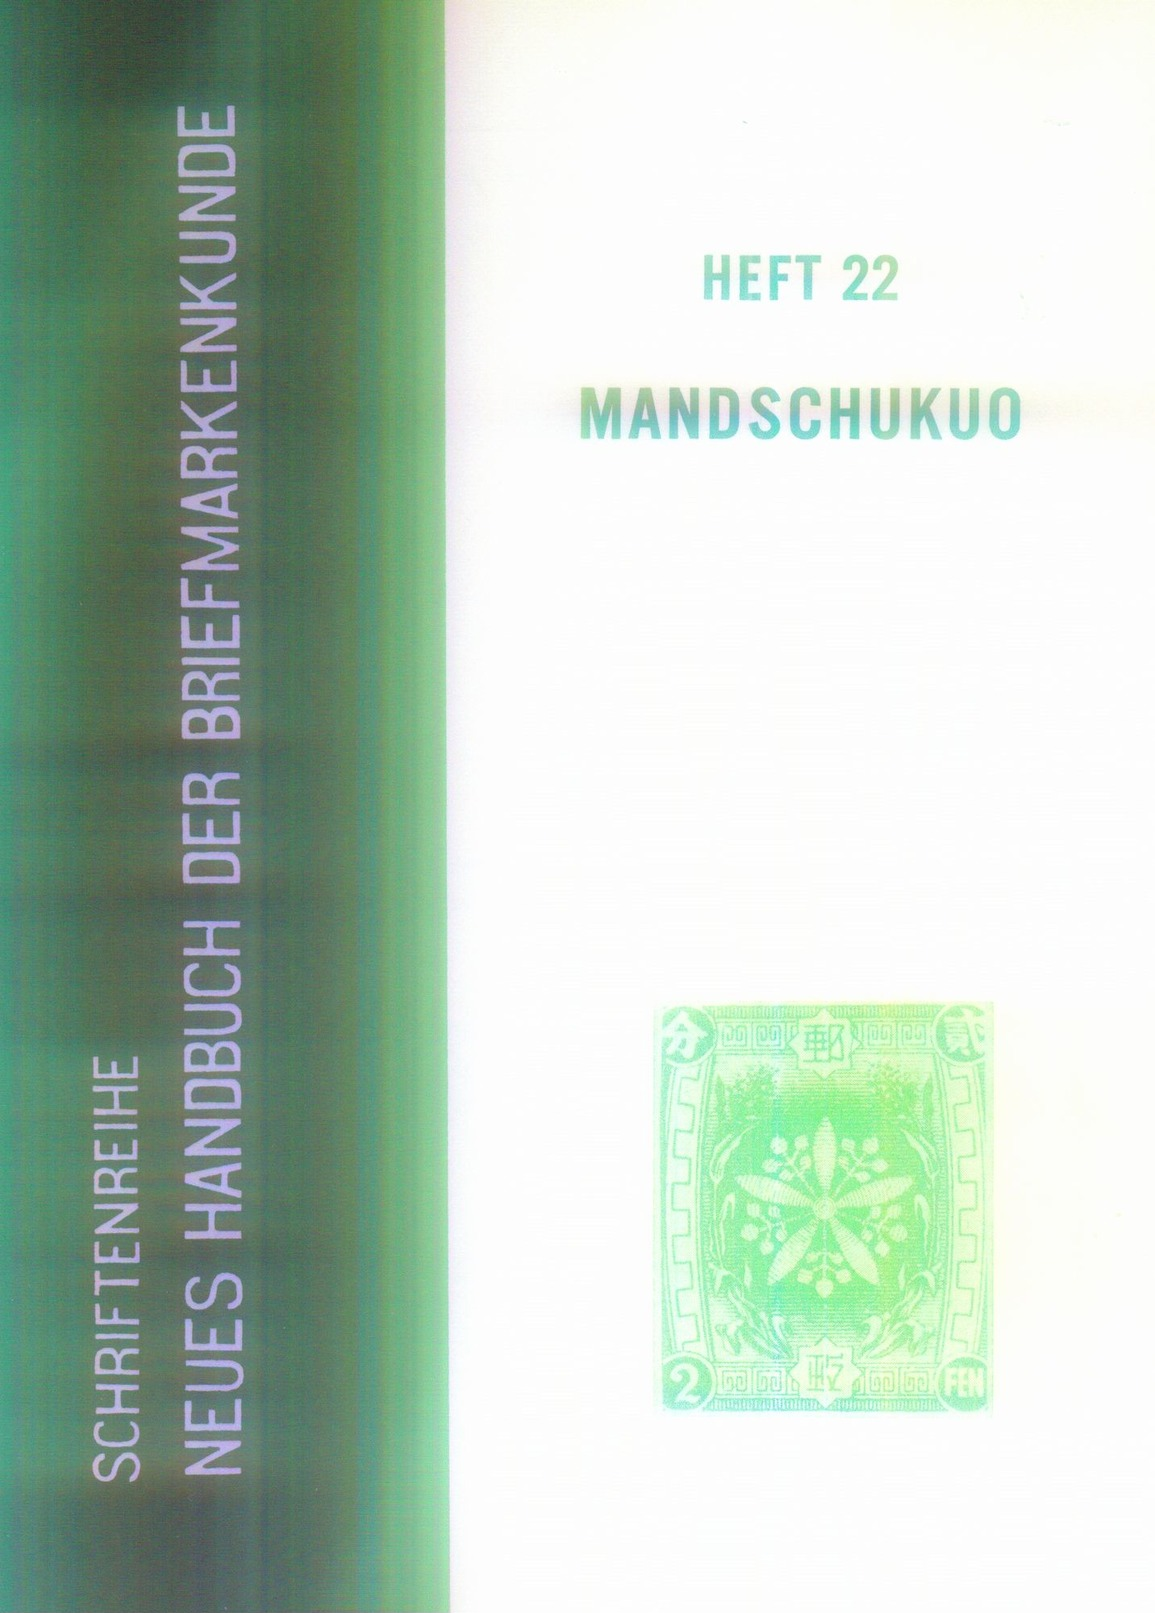 Mandschukuo  Heft 22 Neues Handbuch Für Briefmarkenkunde - Handbücher